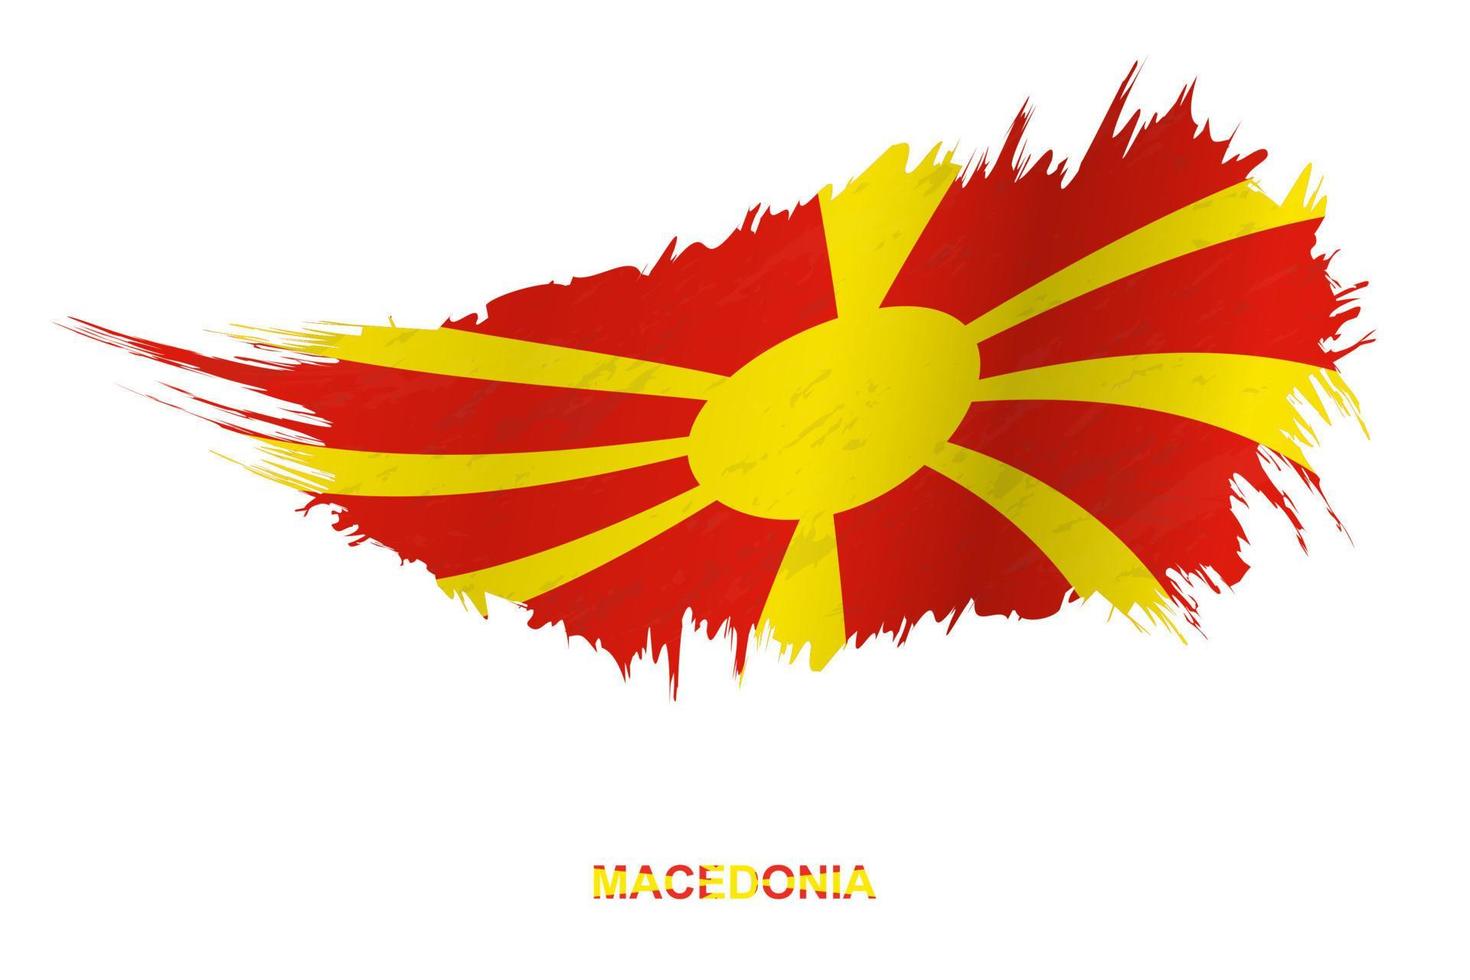 bandeira da macedônia em estilo grunge com efeito acenando. vetor